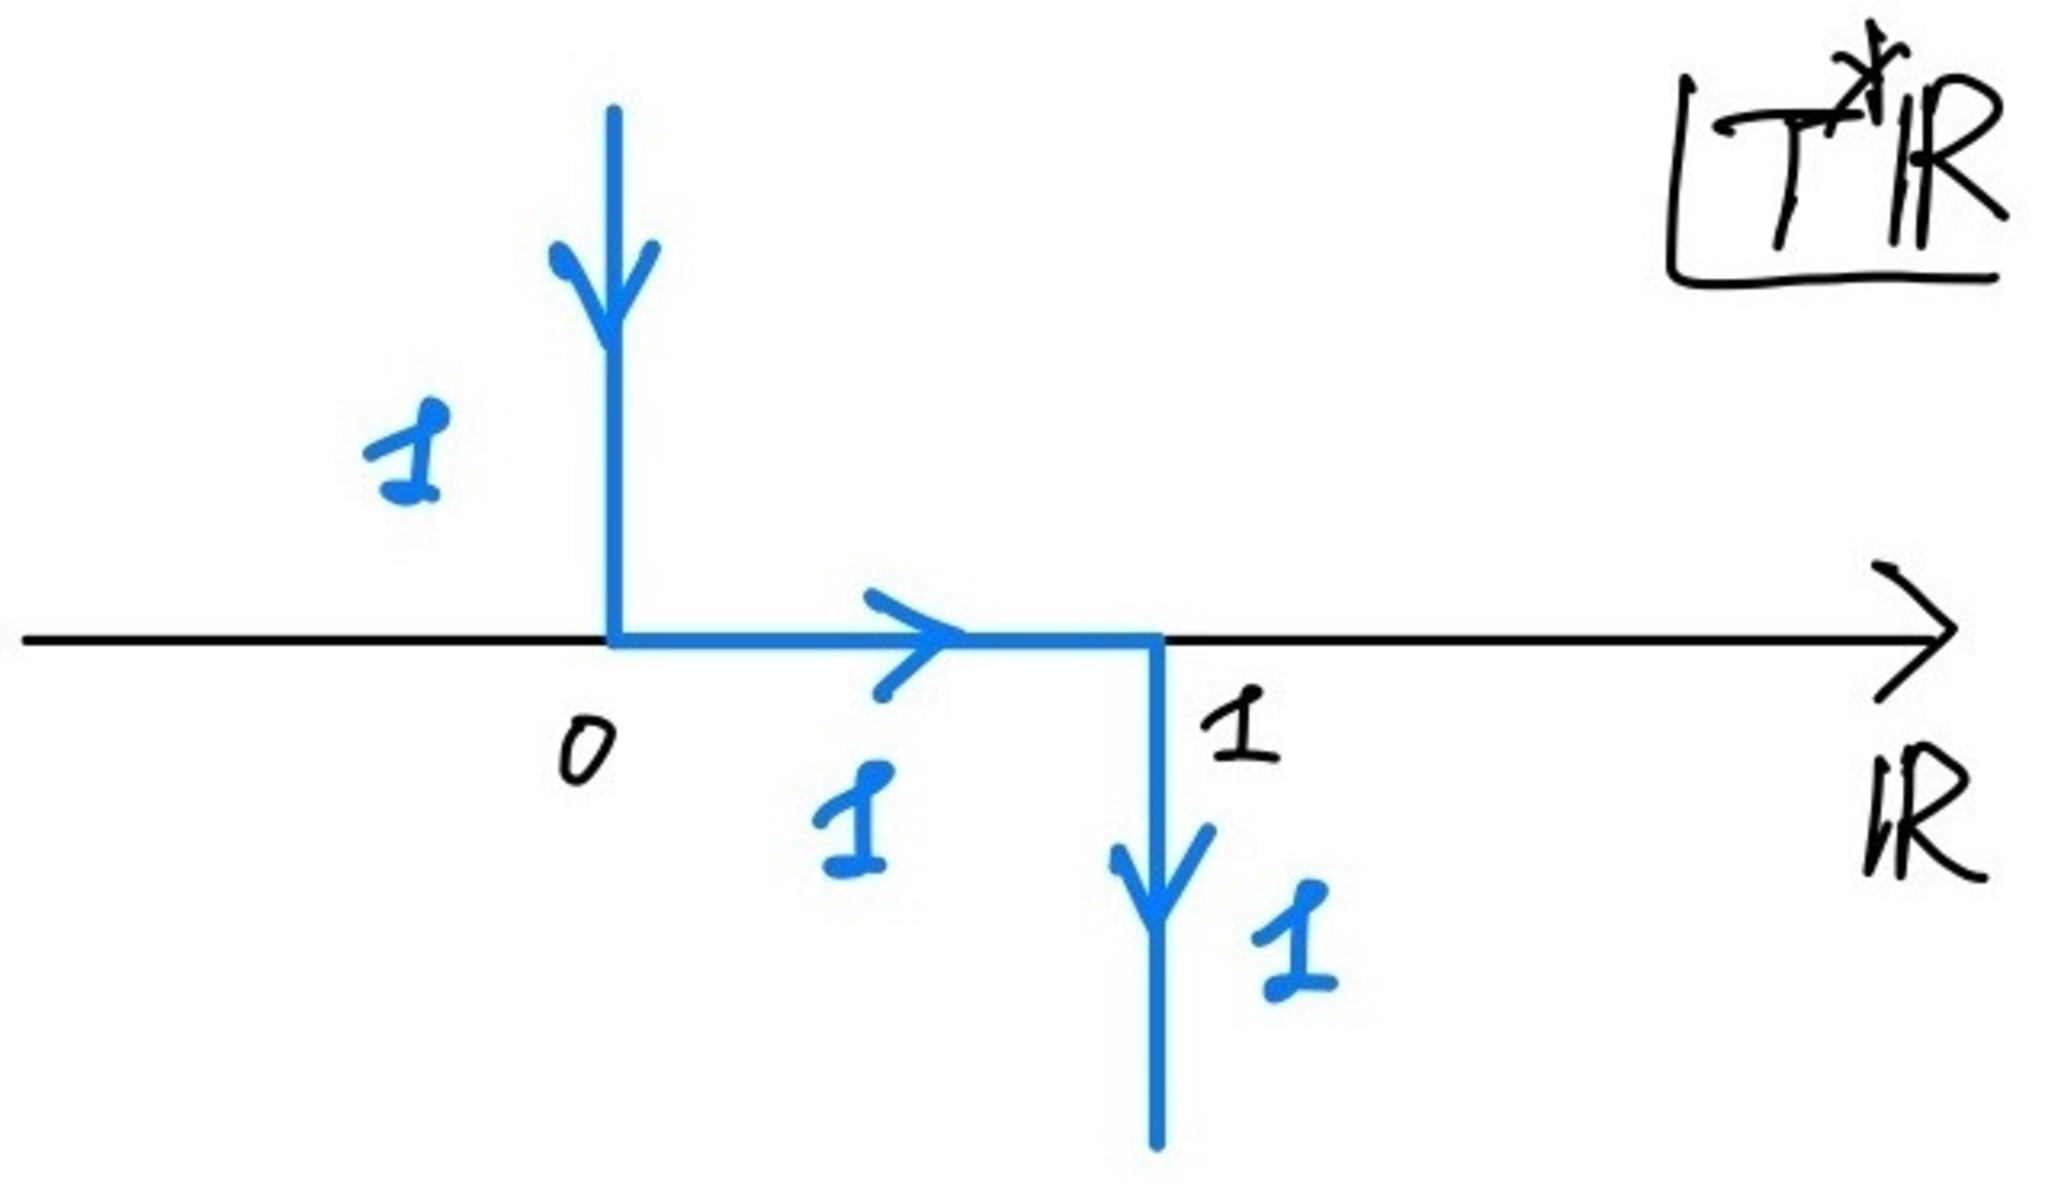 閉区間上の定数層のゼロ拡張の特性サイクル